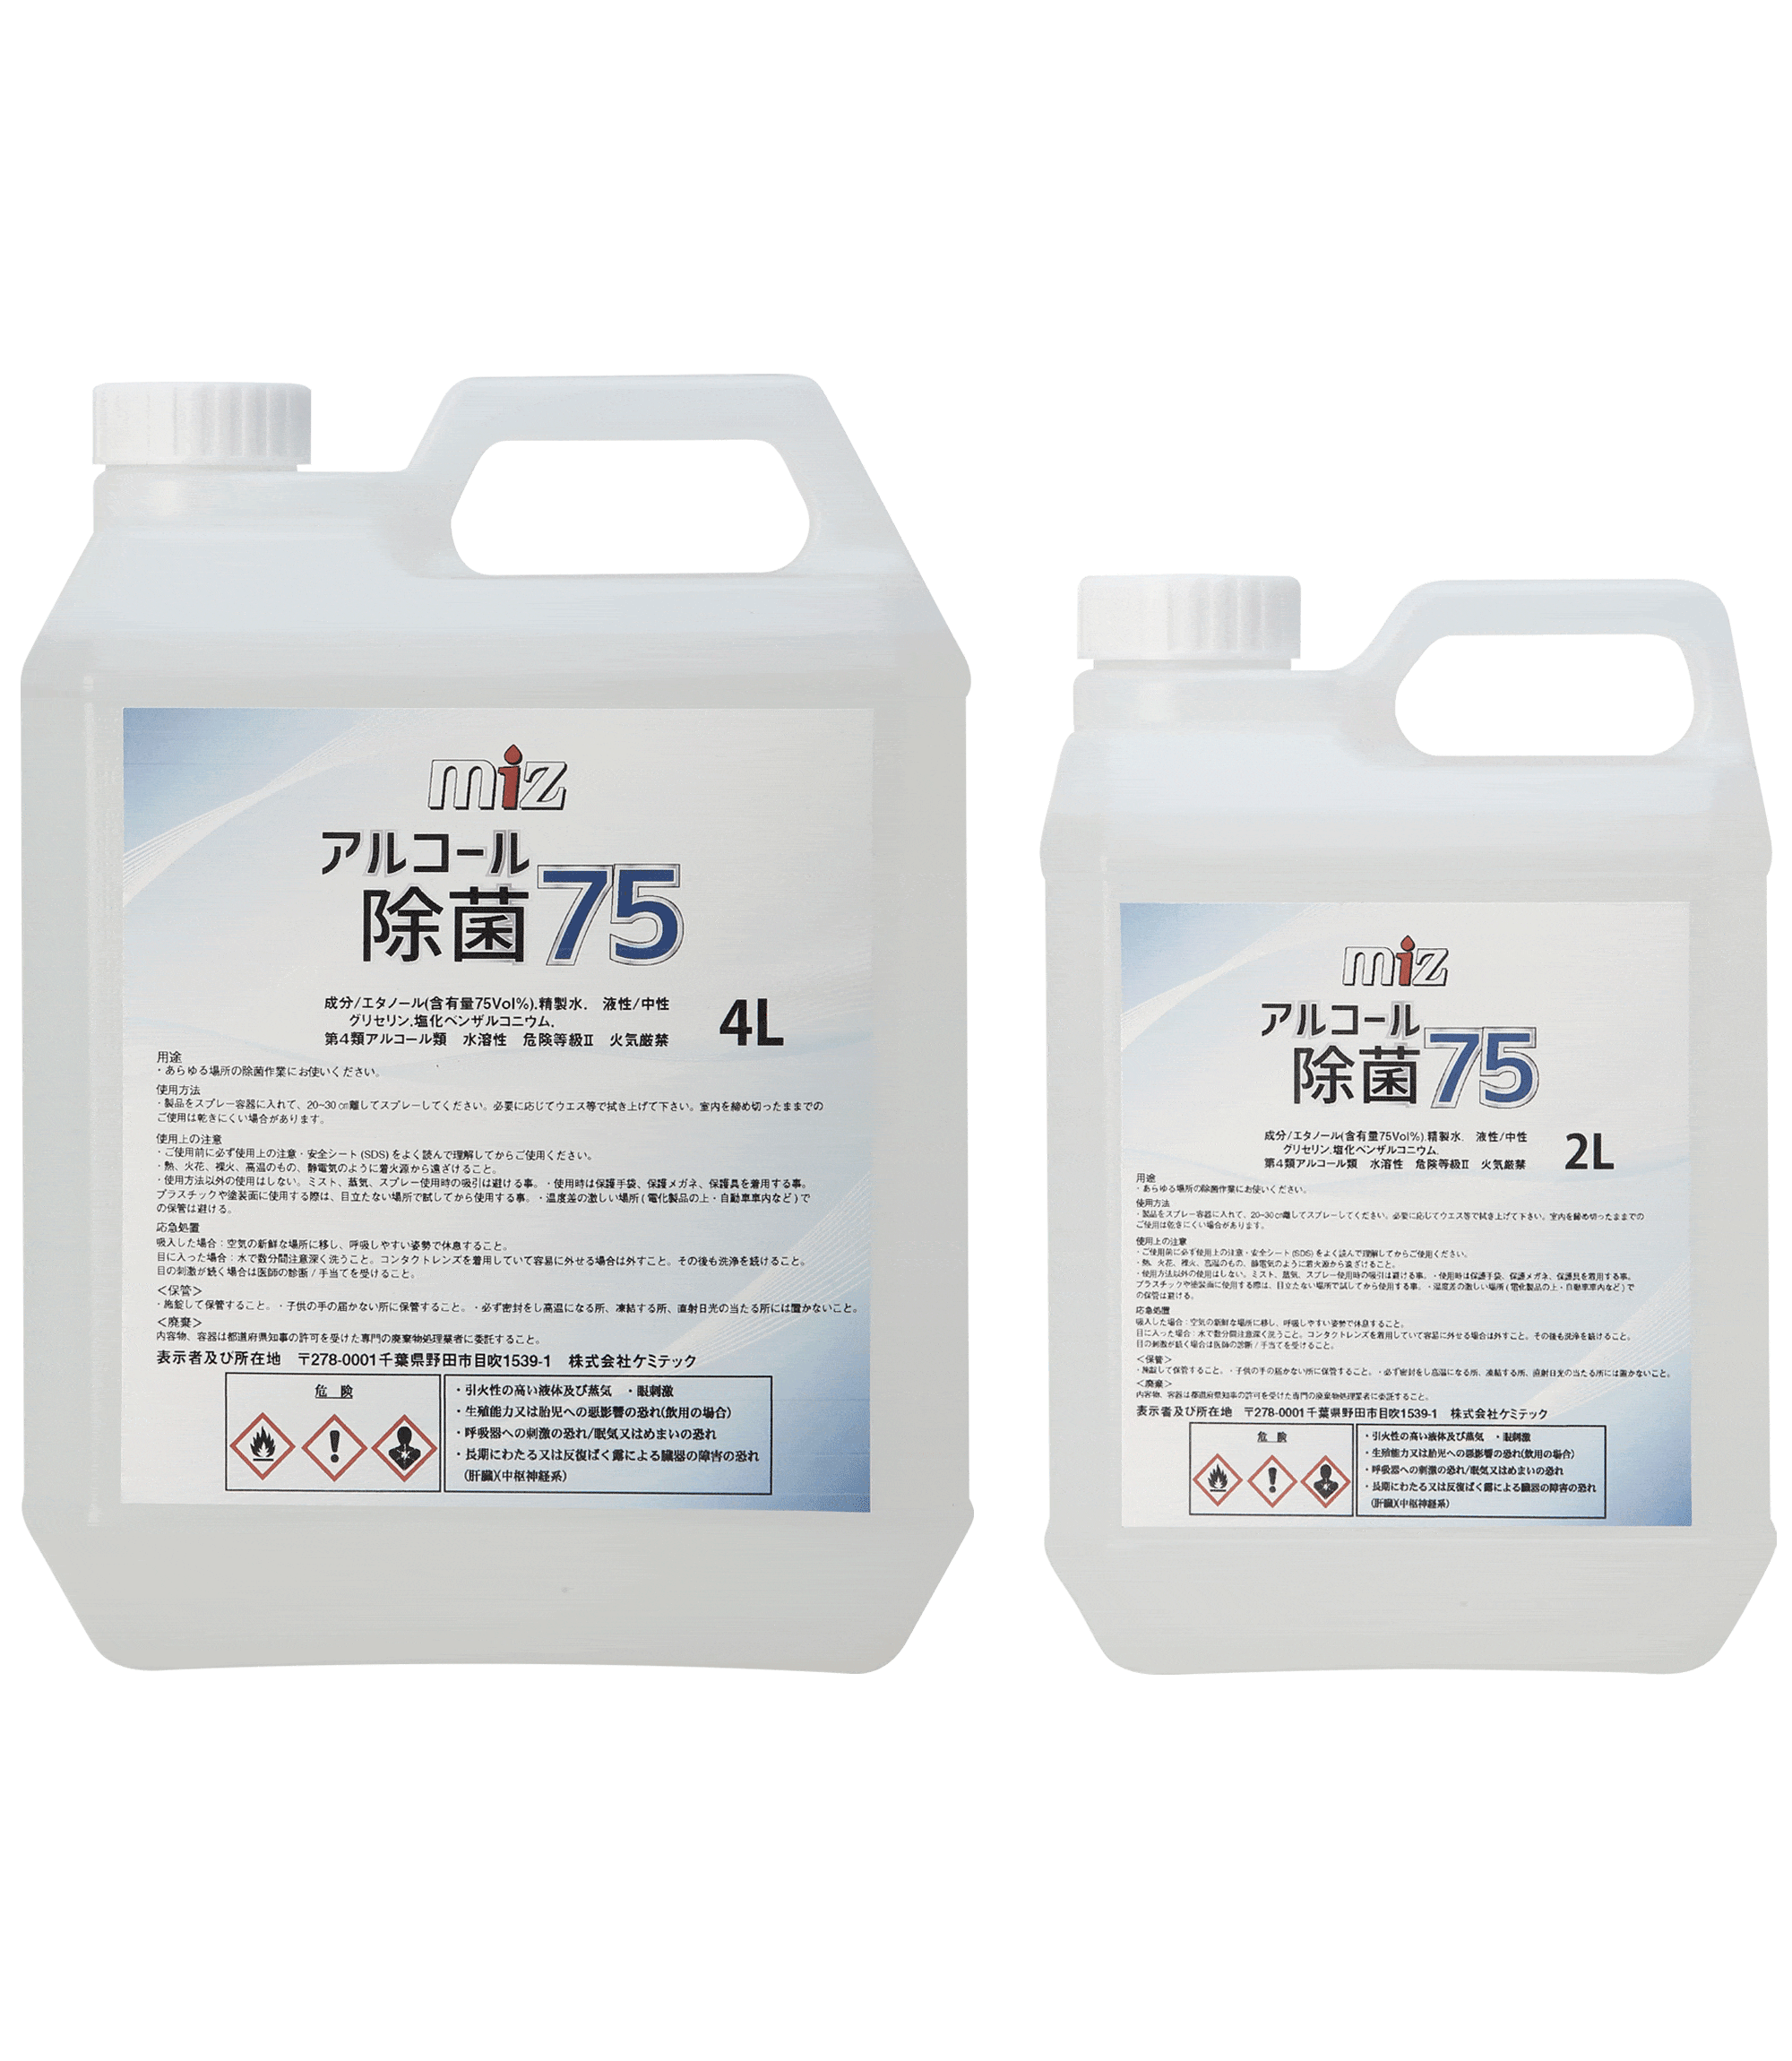 MIZ アルコール除菌75は、エタノールにグリセリンを配合することで保湿効果に優れ、更にウイルス対策に有効とされている塩化ベンザルコニウムを配合。ご安心してご使用頂けるアルコール除菌剤になっております。 【成分】エタノール(含有量75Vol%)塩化ベンザルコニウム、グリセリン、精製水 【性状】無色・透明・無香料